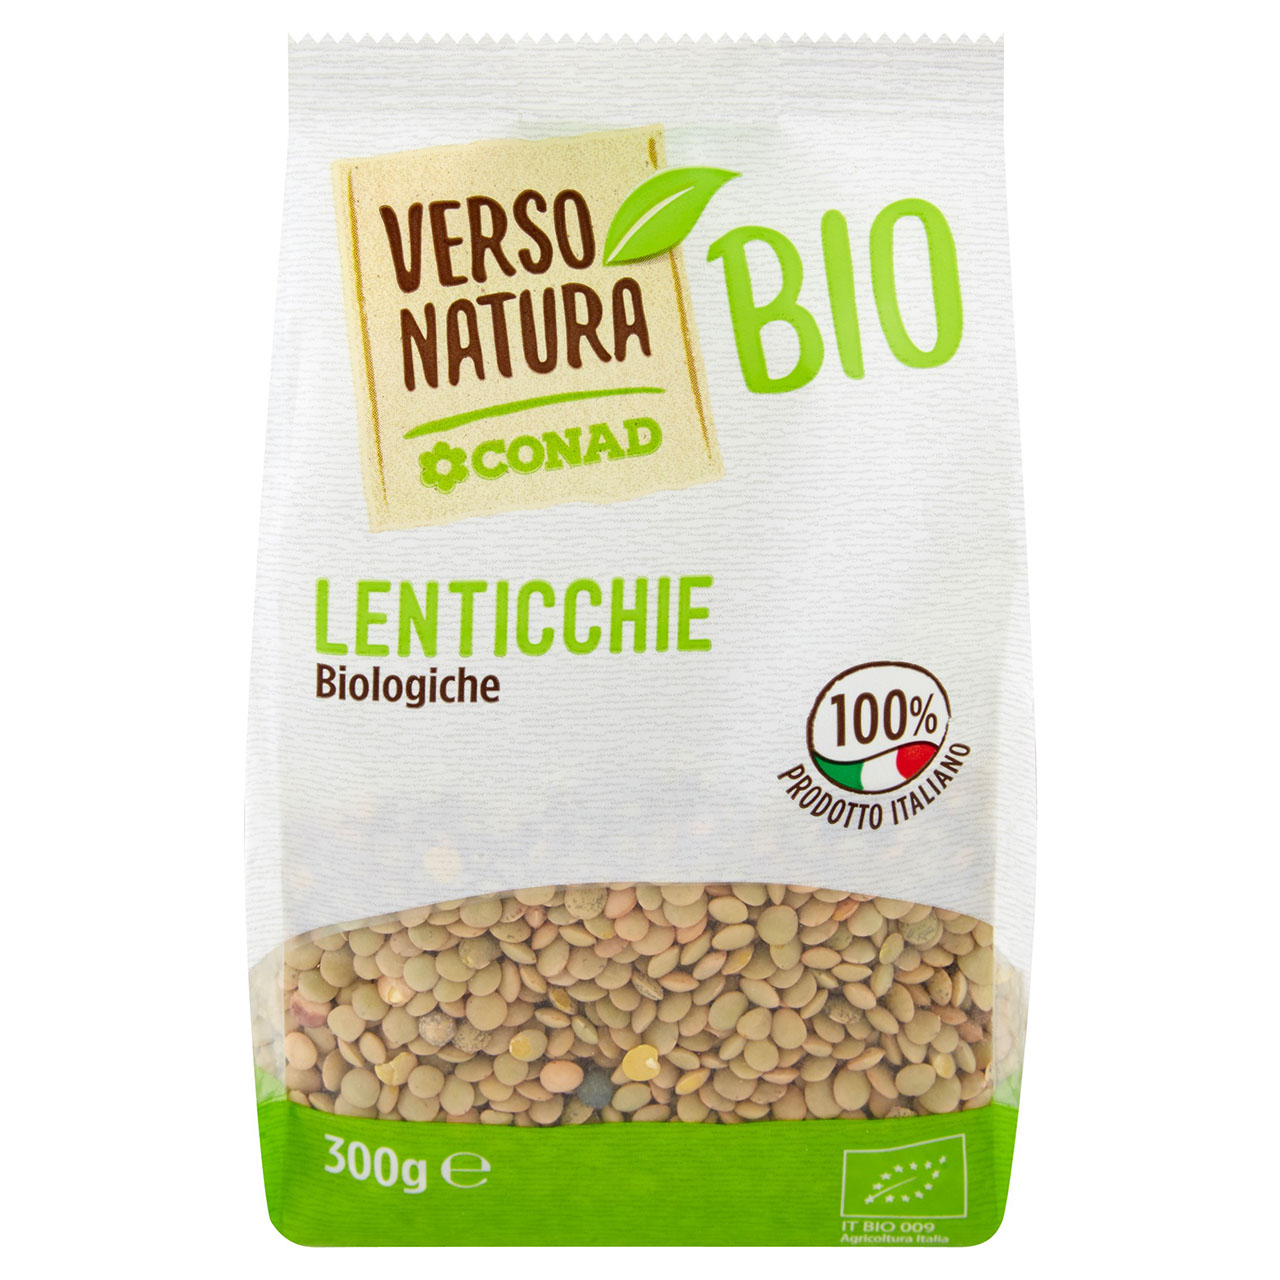 Lenticchie Verdi Bio Conad in vendita online